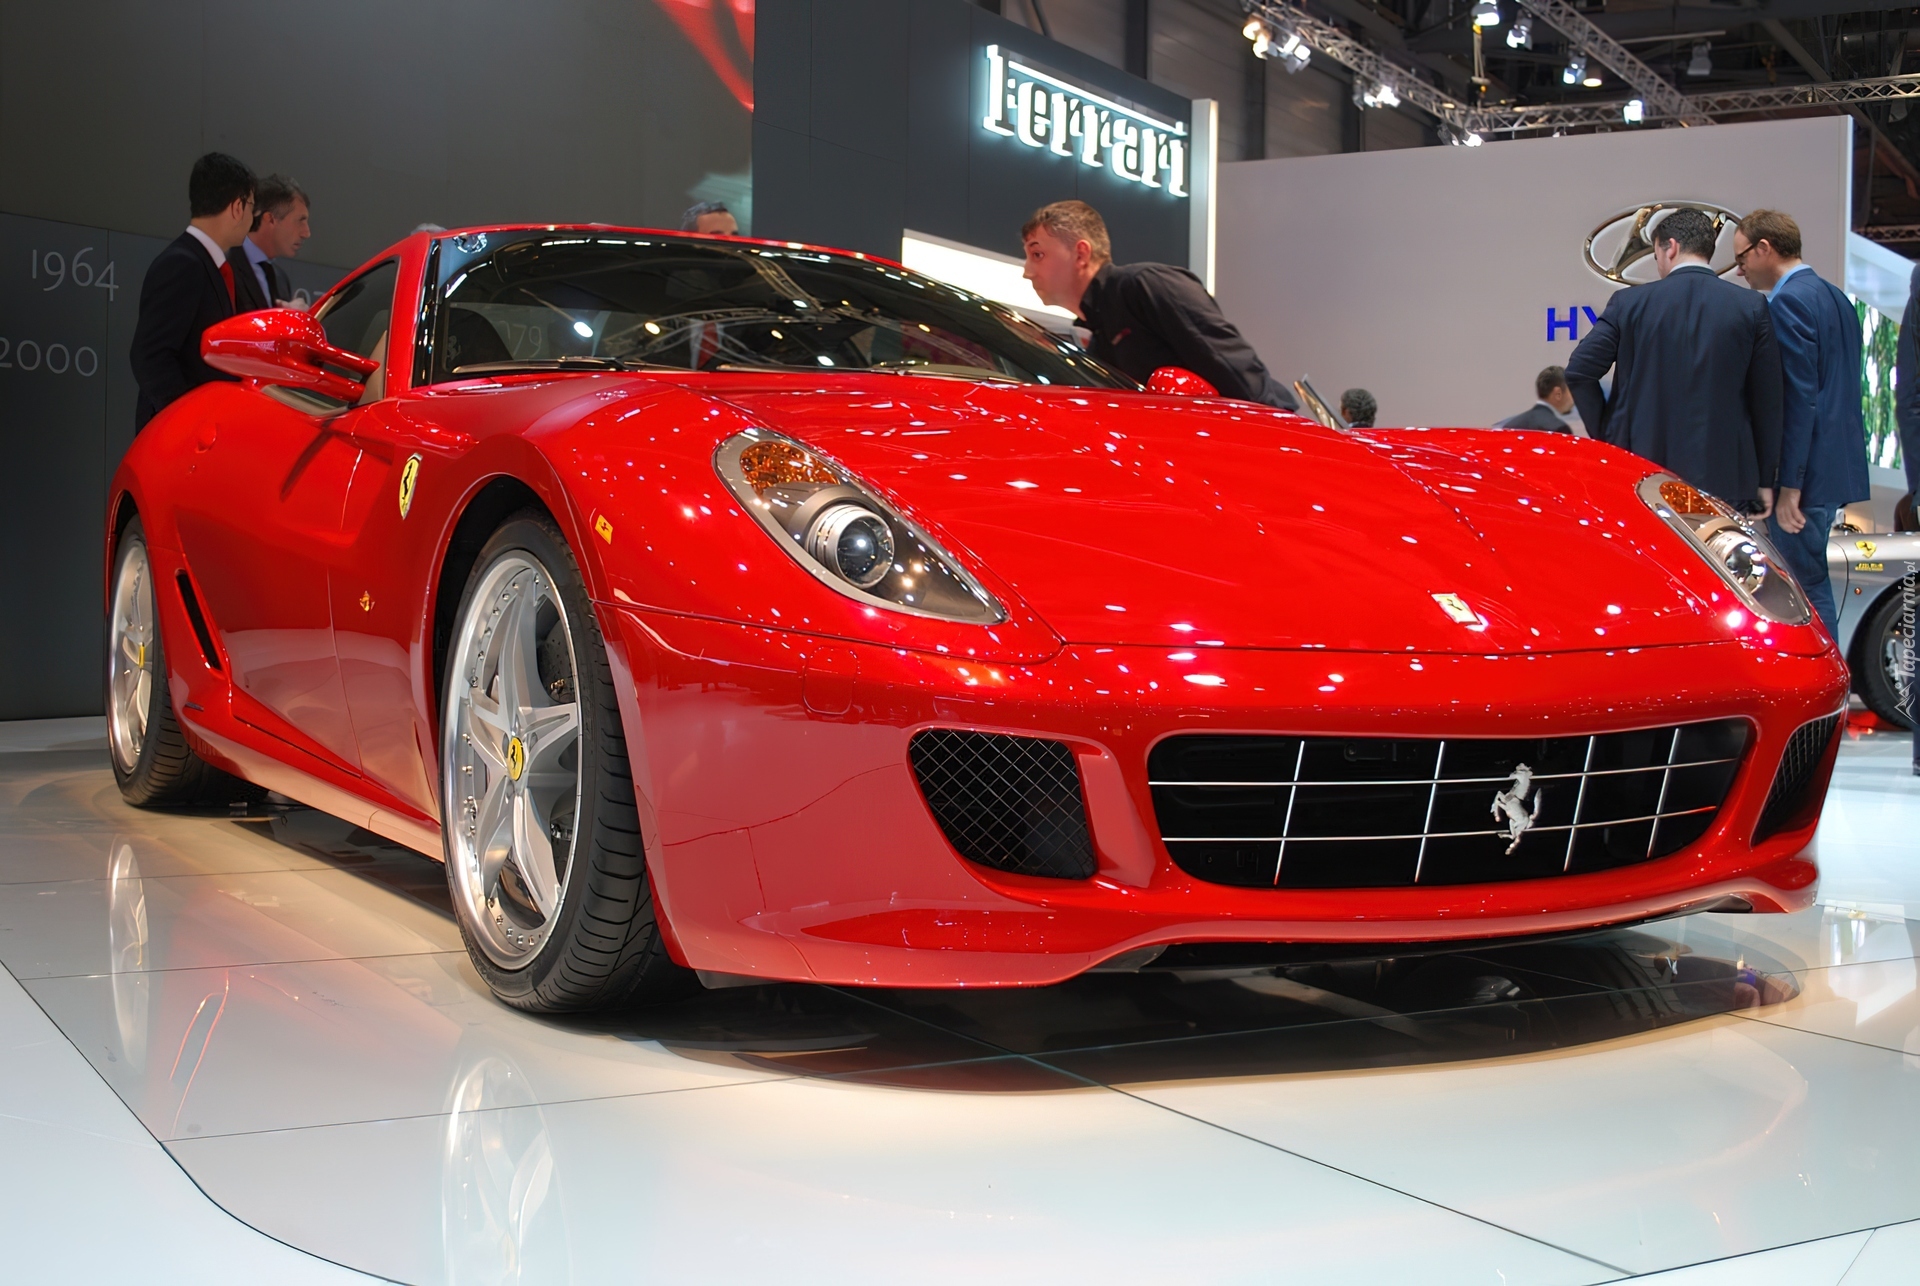 Prezentacja, Nowego, Ferrari 599